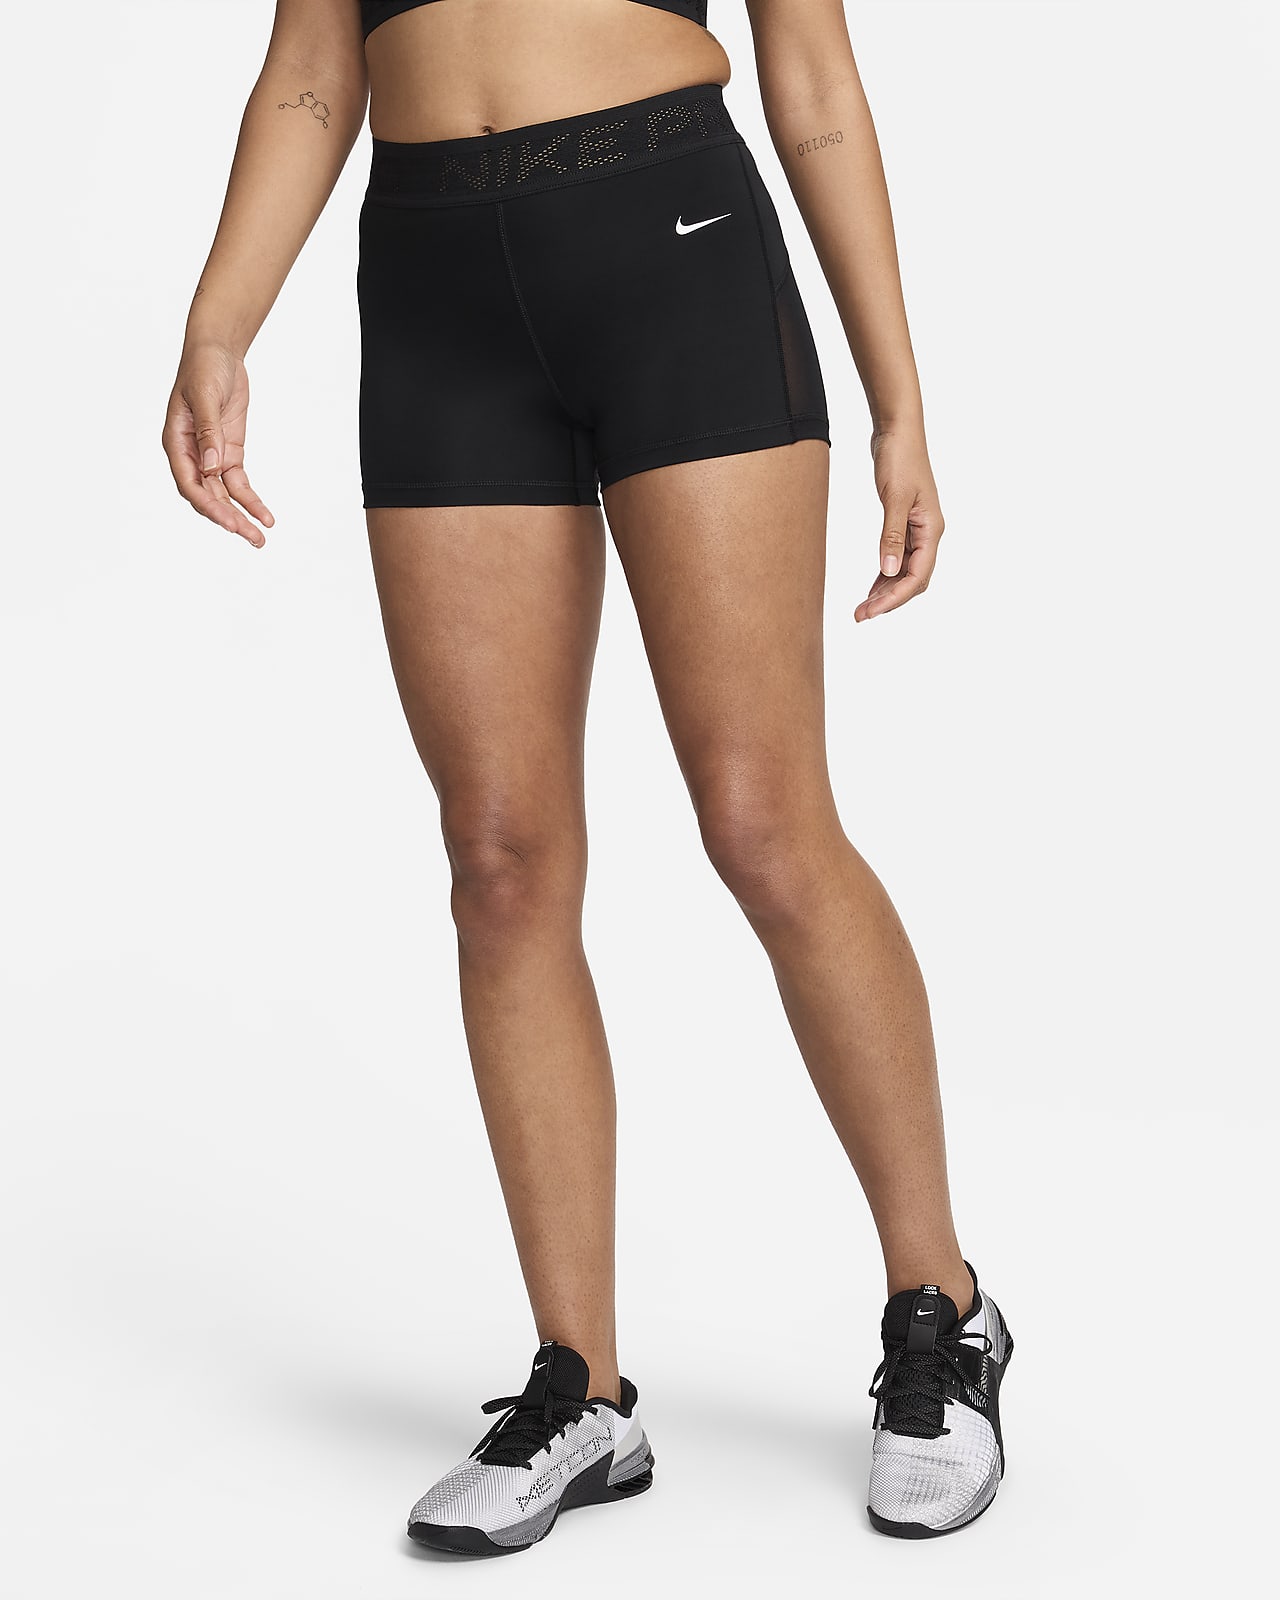 Shorts a vita media con inserti in mesh 8 cm Nike Pro – Donna